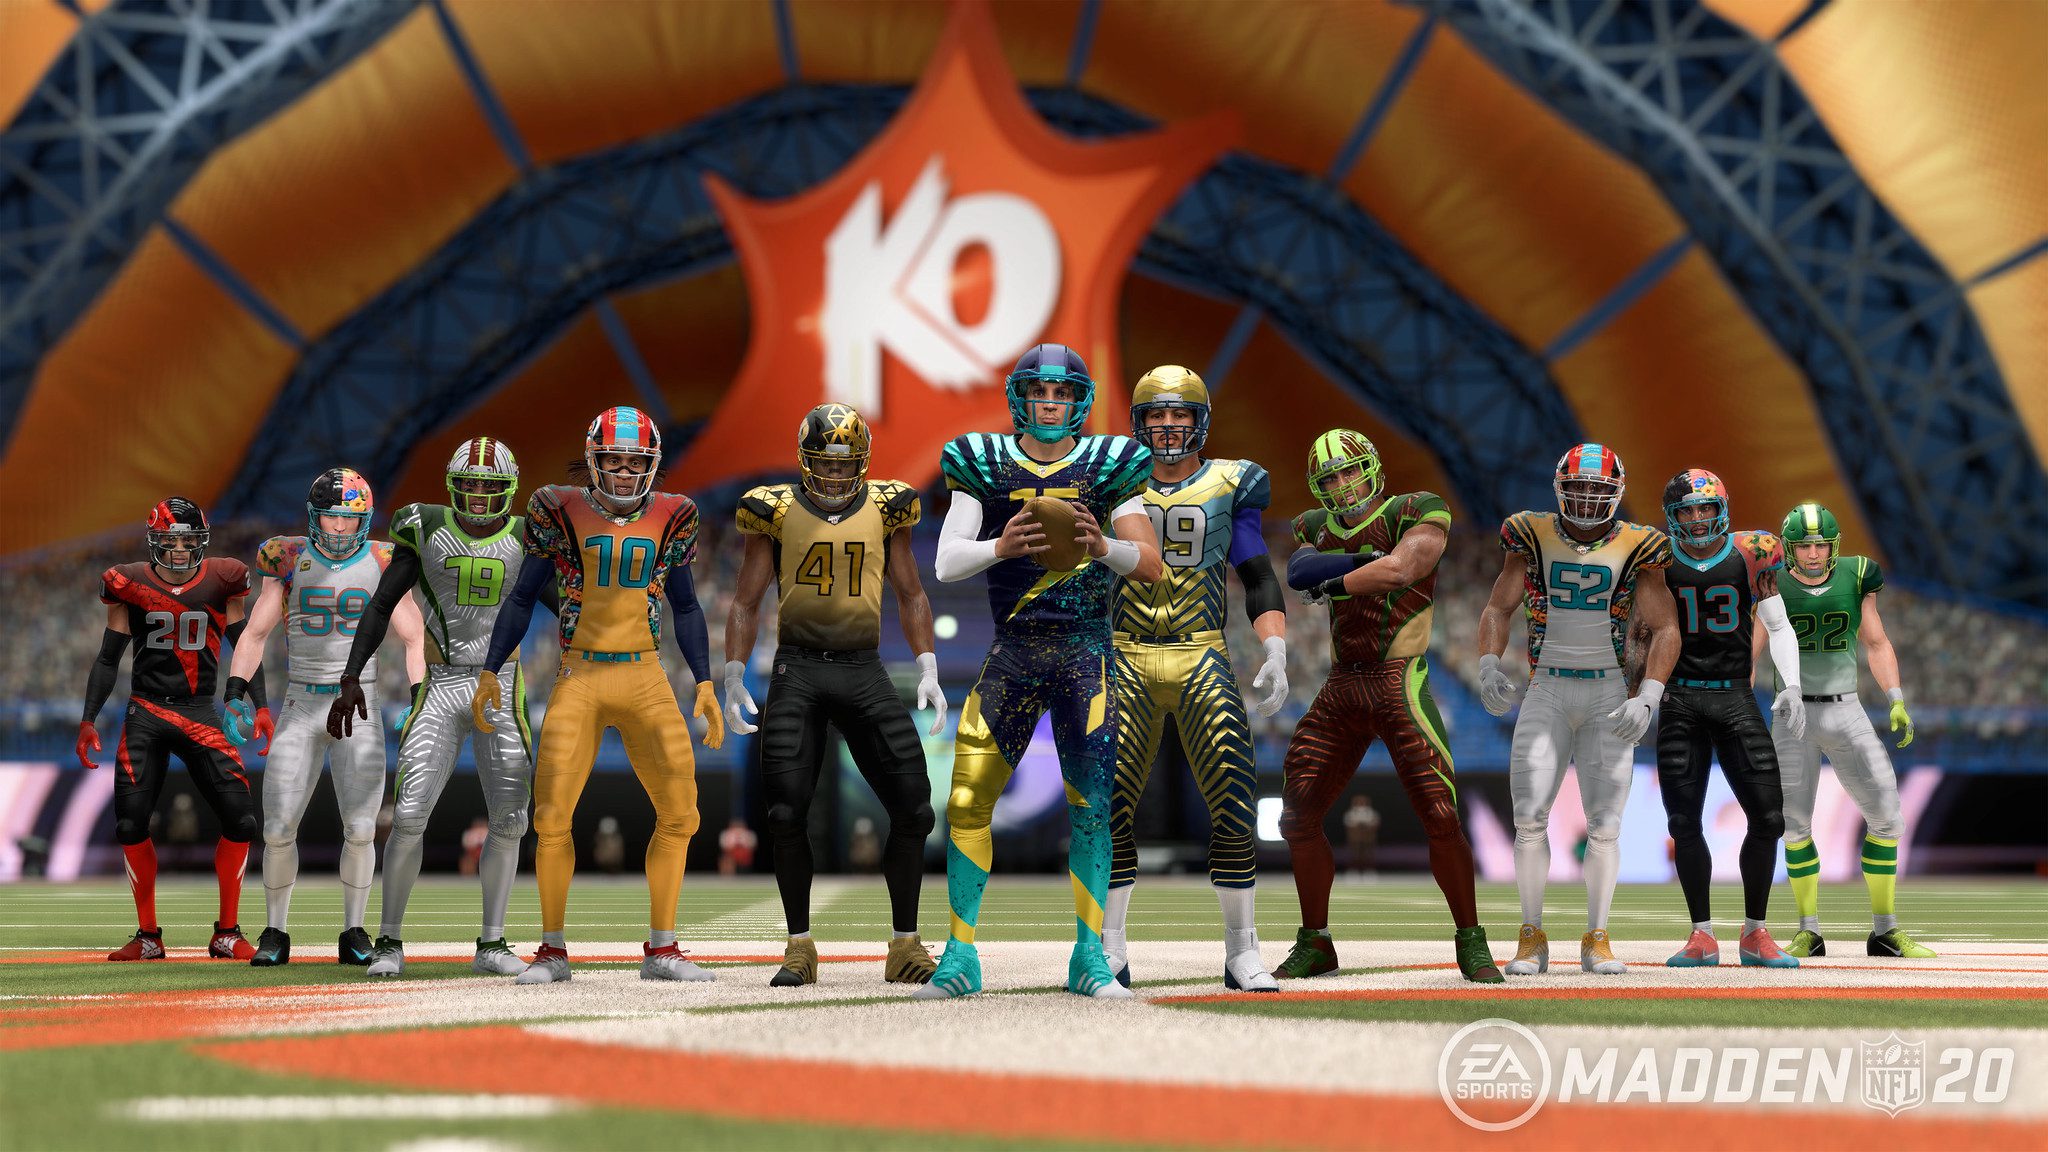 Madden NFL 20: Superstar KO Mode on PS4